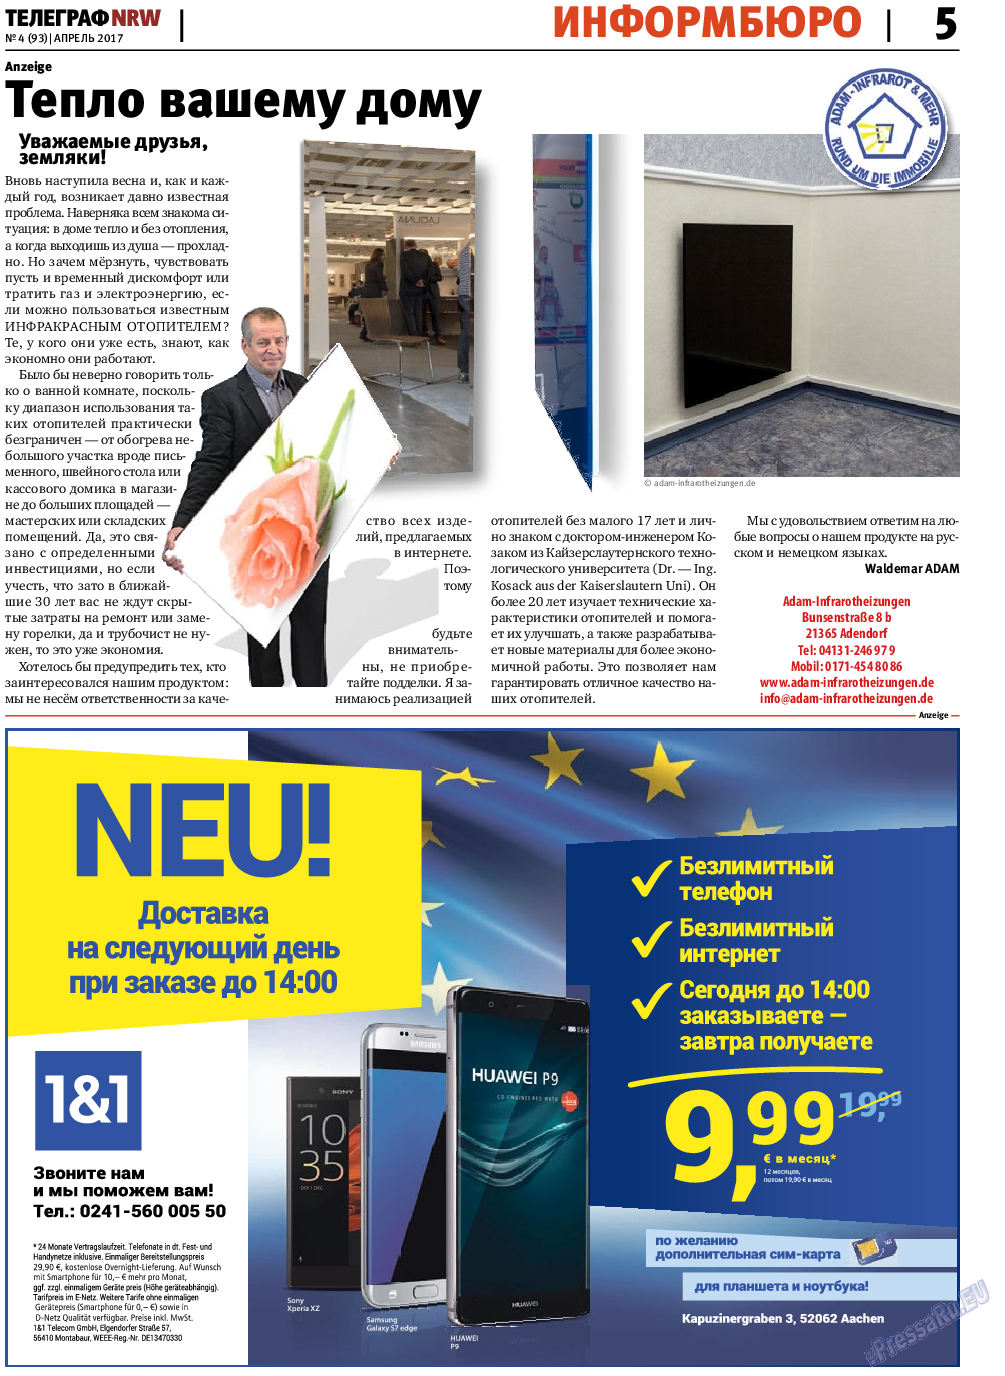 Телеграф NRW (газета). 2017 год, номер 4, стр. 5